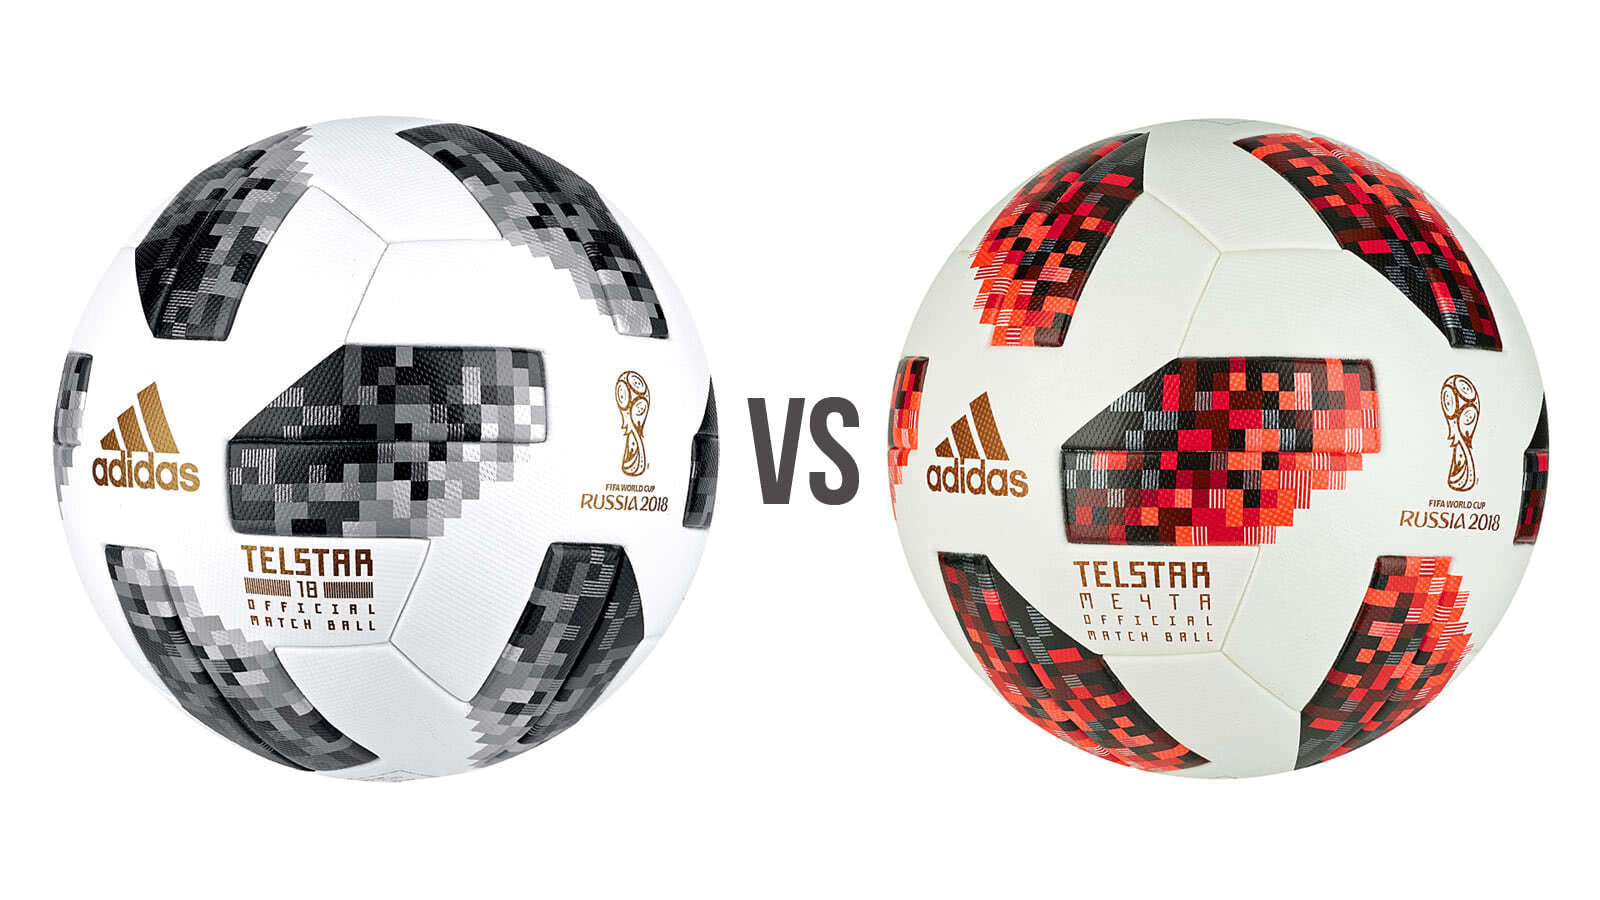 Der adidas Telstar Mechta als WM 2018 Endspielball